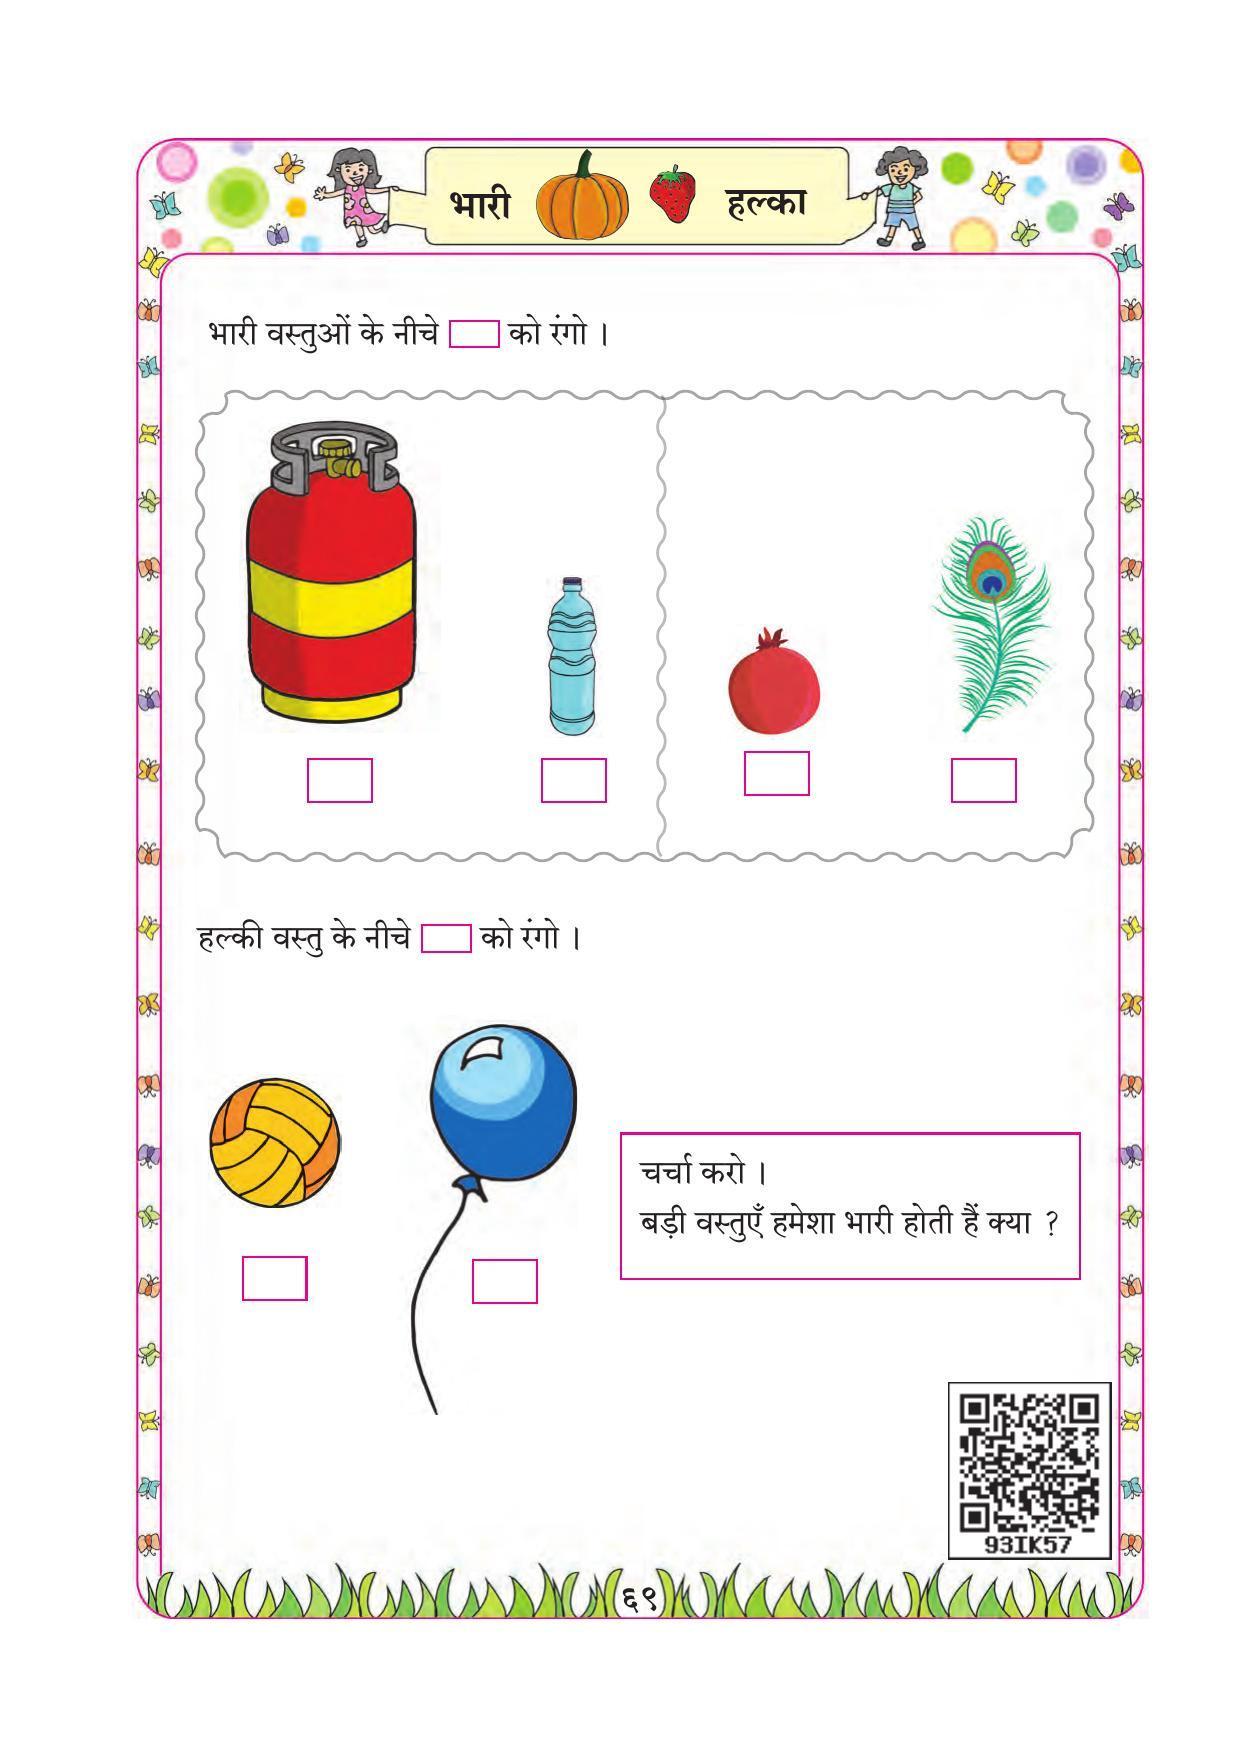 Maharashtra Board Class 1 Maths (Hindi Medium) Textbook - Page 79